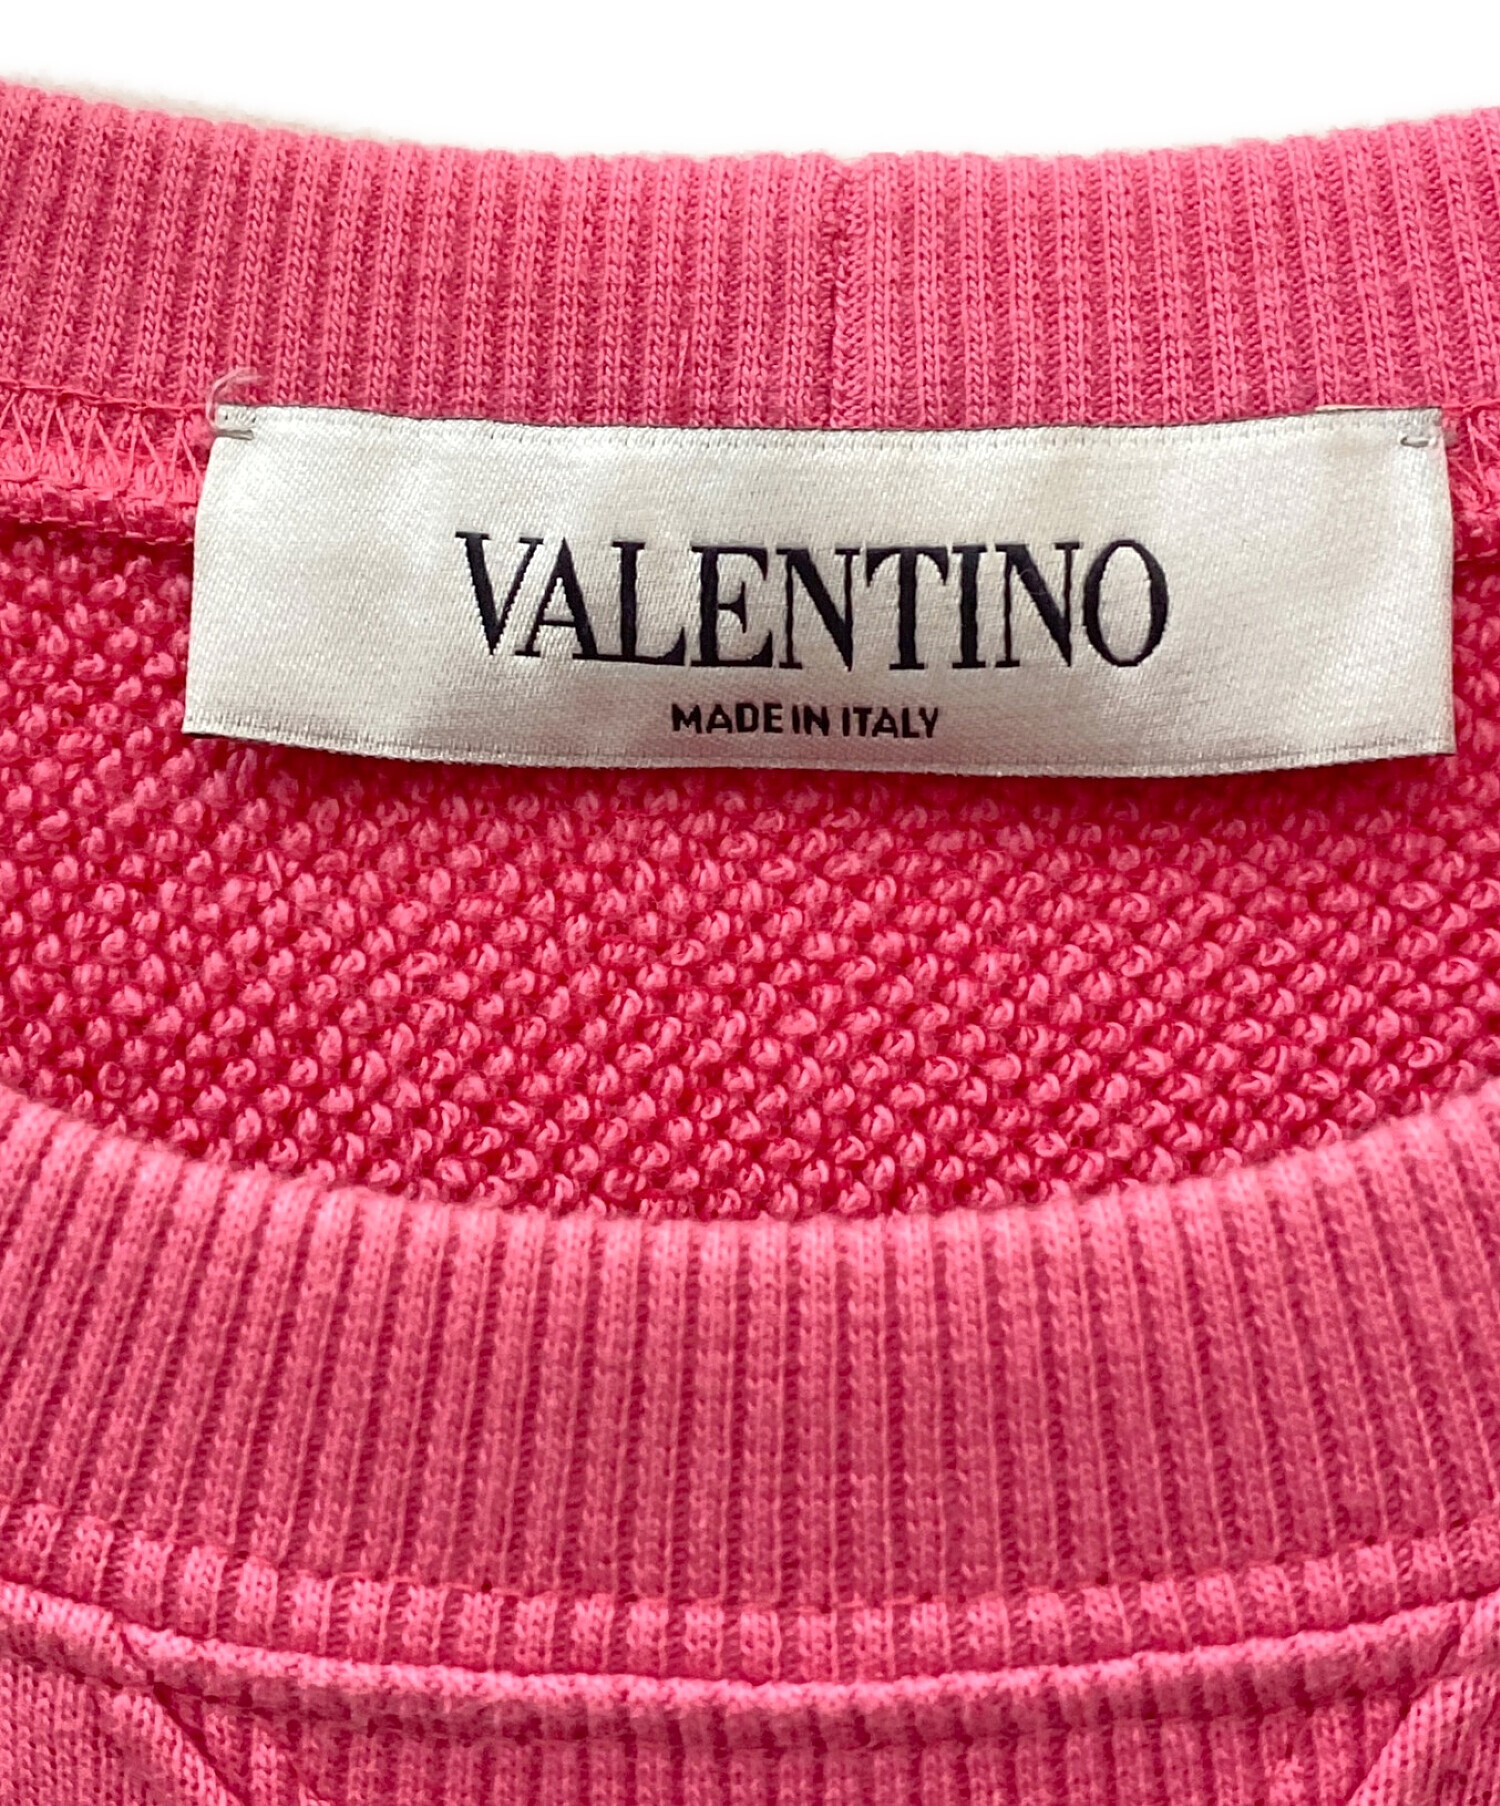 VALENTINO (ヴァレンティノ) VLTNラグランスウェット ピンク サイズ:S